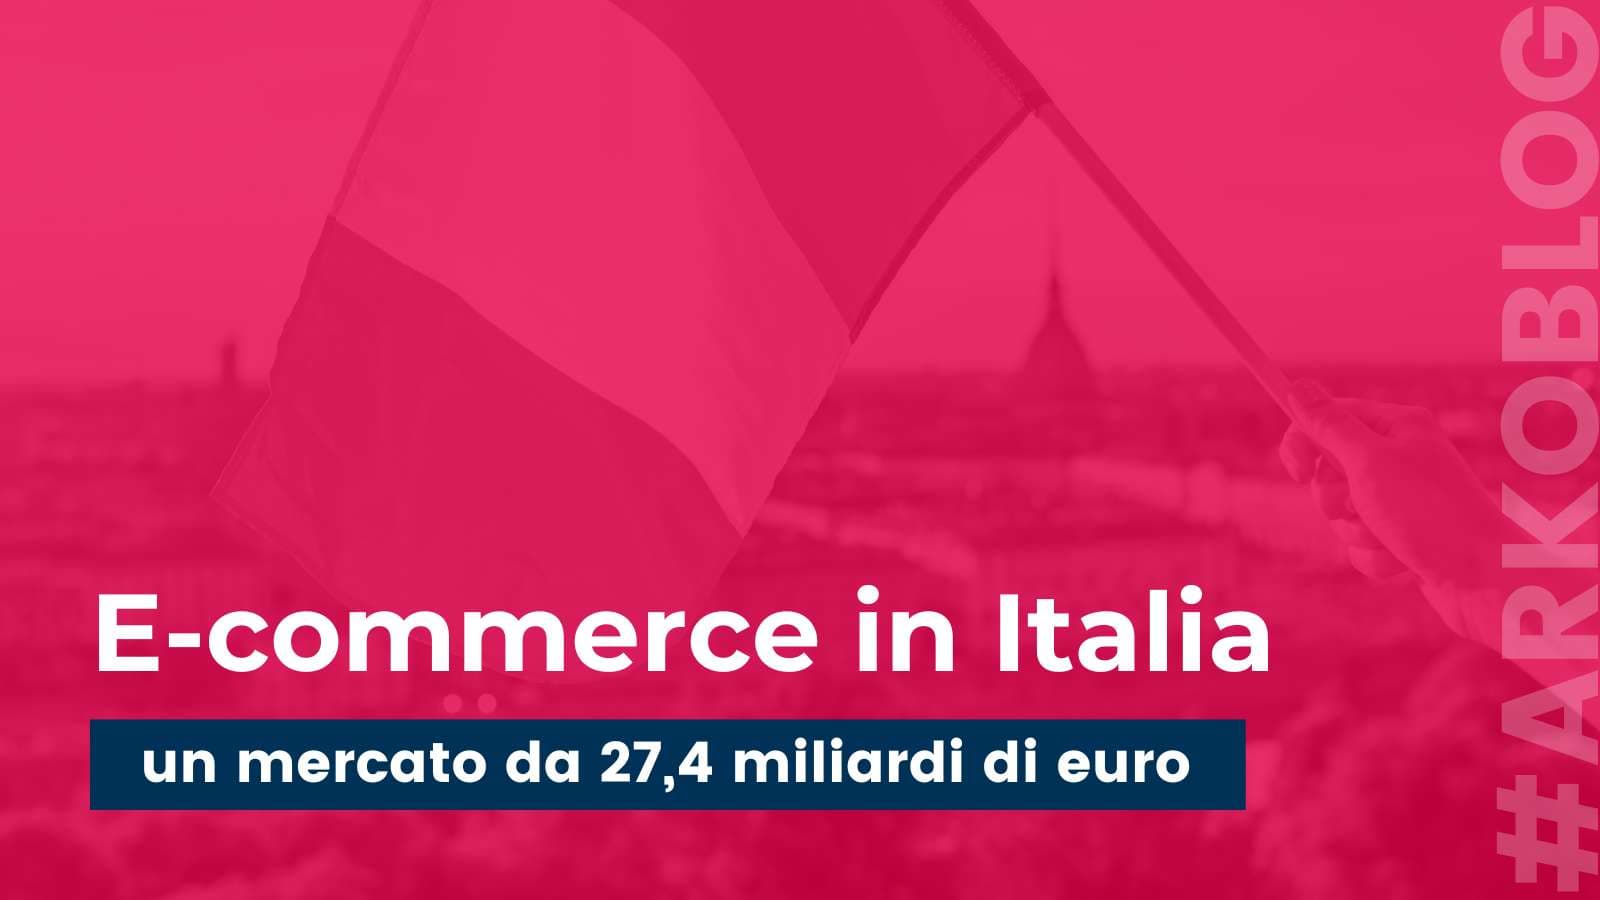 E-commerce in Italia: un mercato da 27,4 miliardi di euro